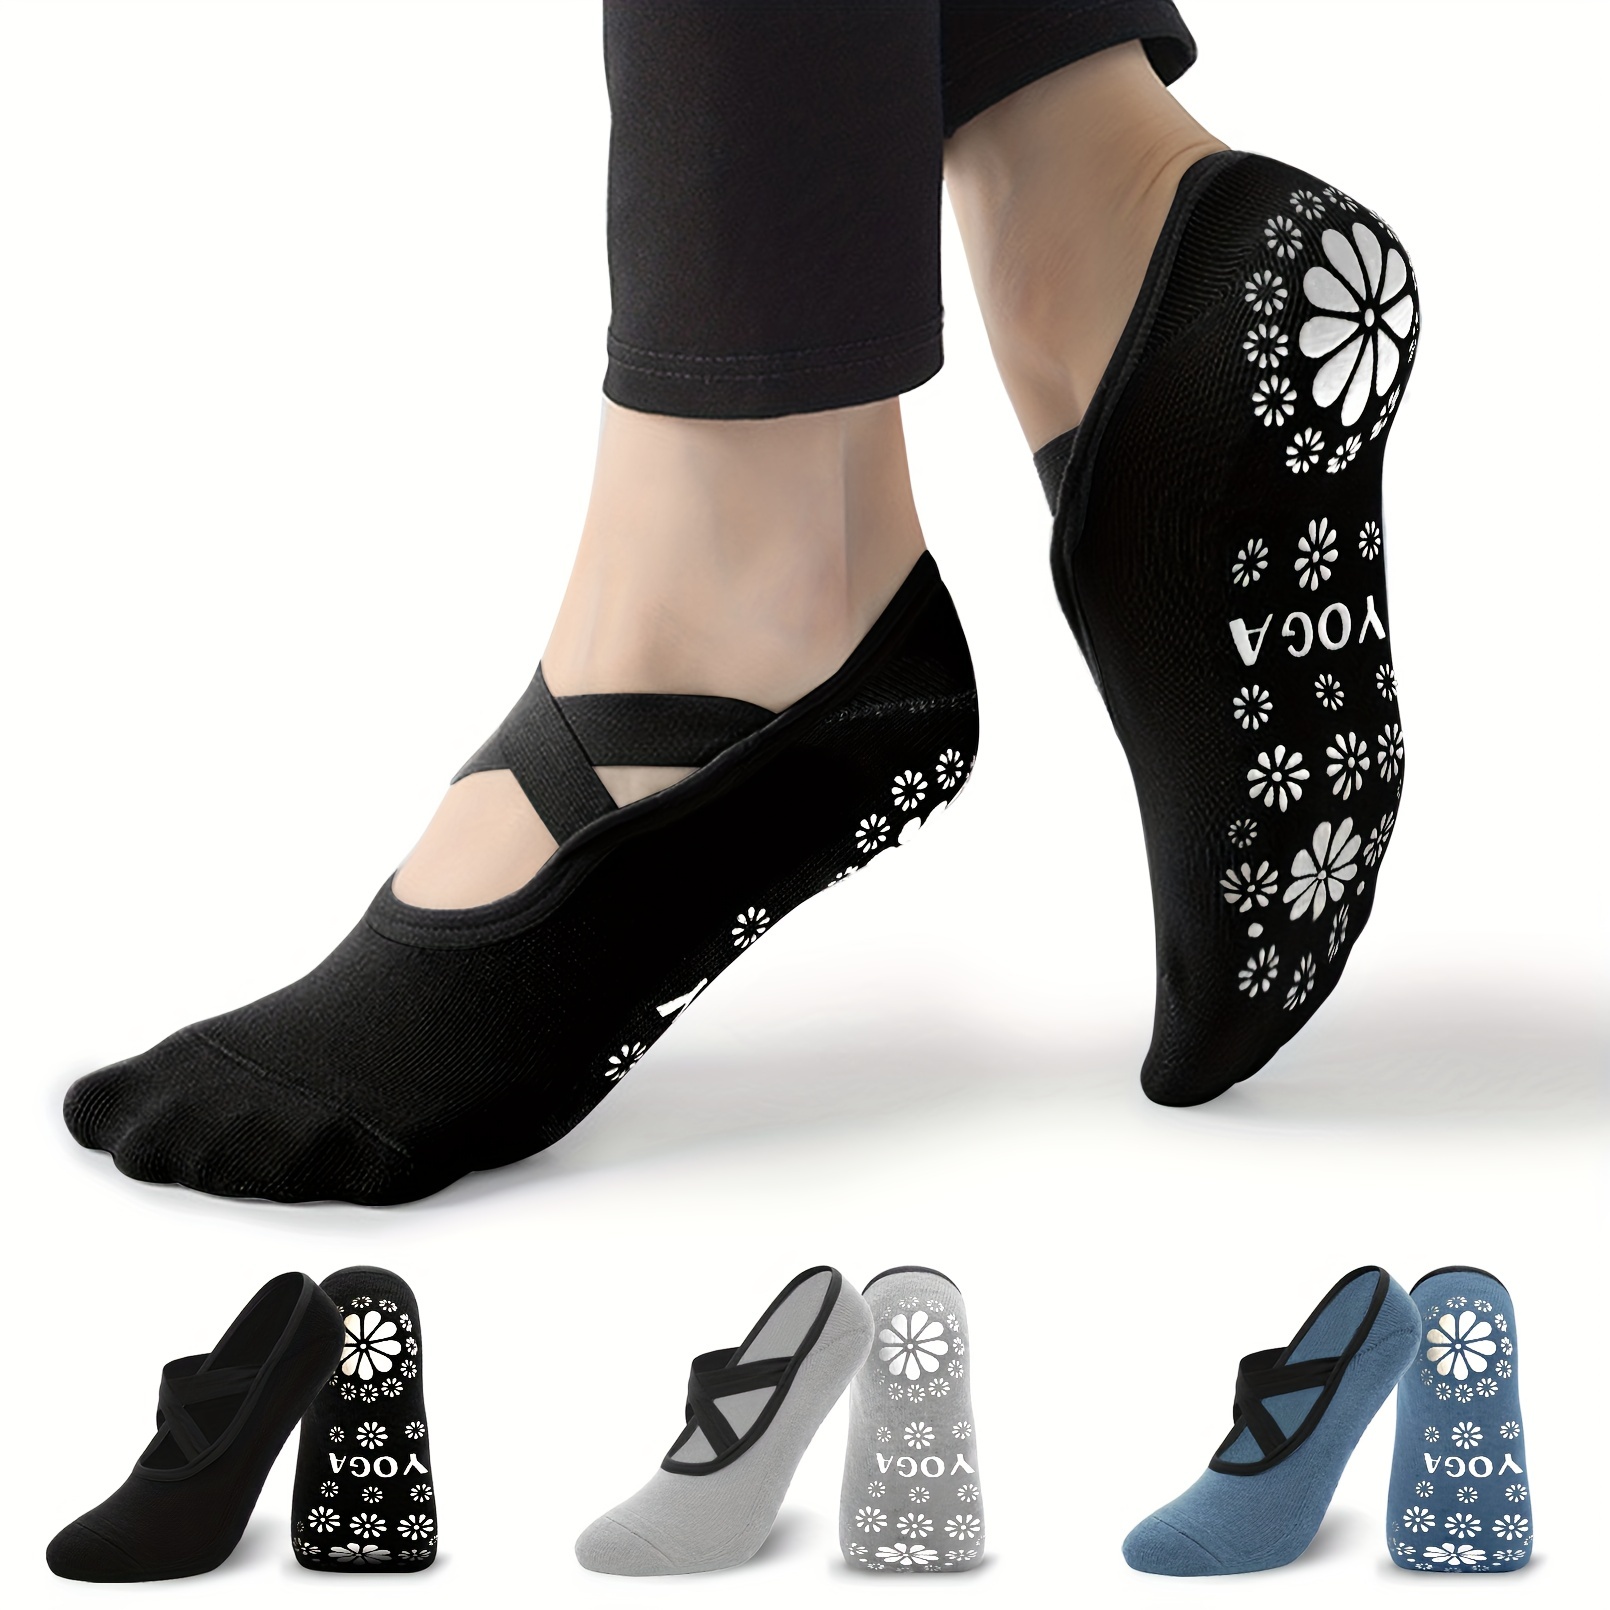 Best Grip Socks for Pilates, Yoga & Barre